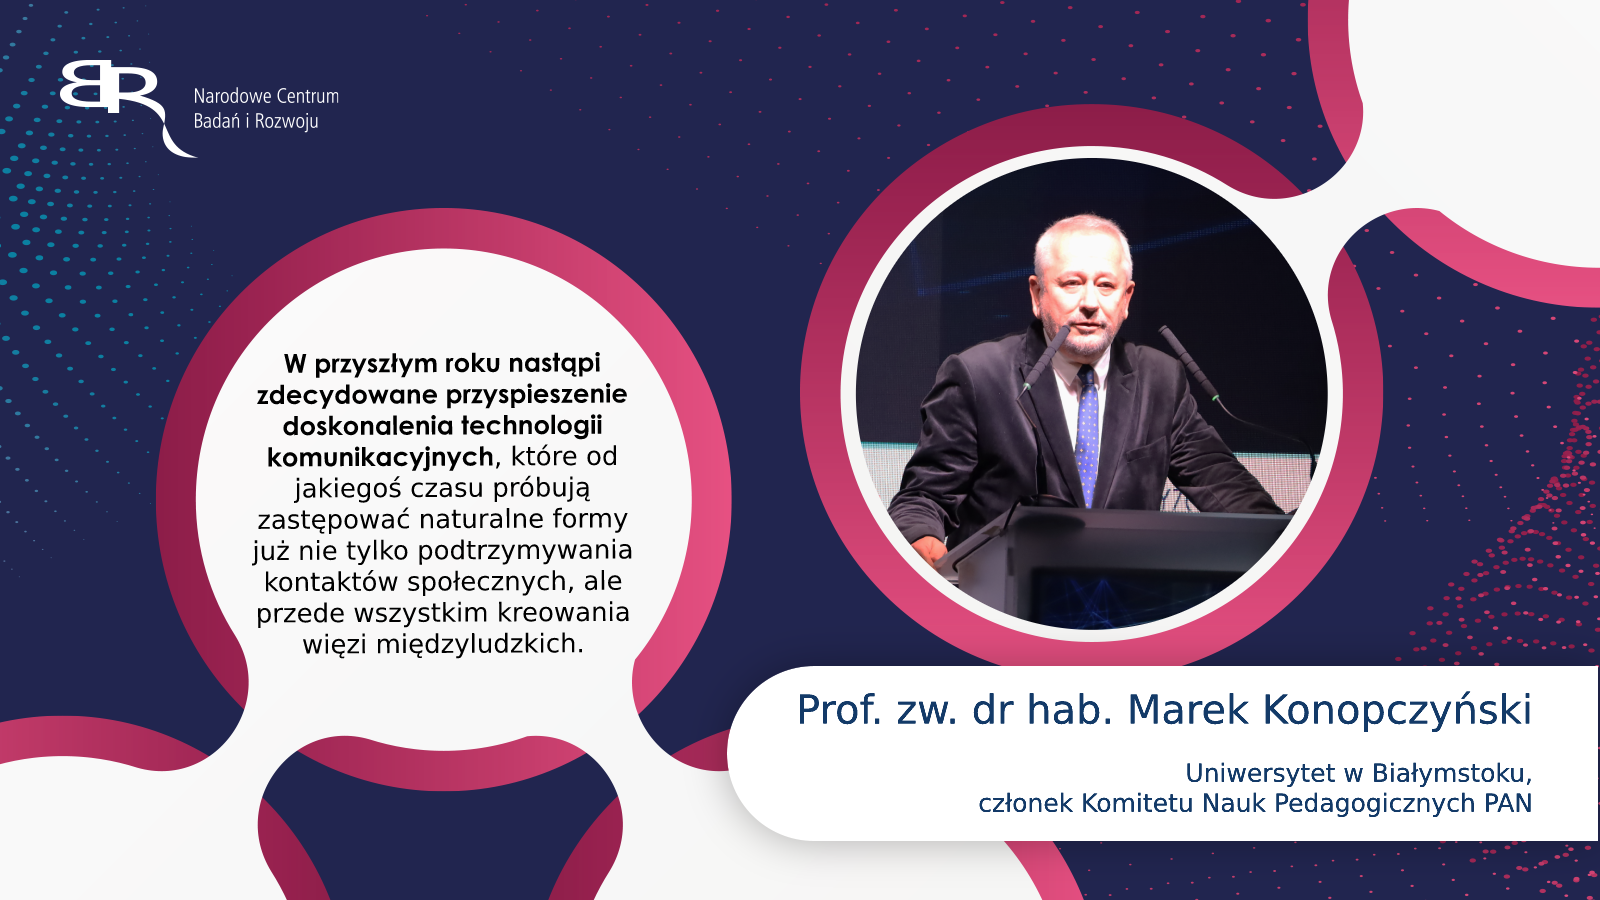 Prof. zw. dr hab. Marek Konopczyński - Uniwersytet w Białymstoku, członek Komitetu Nauk Pedagogicznych PAN